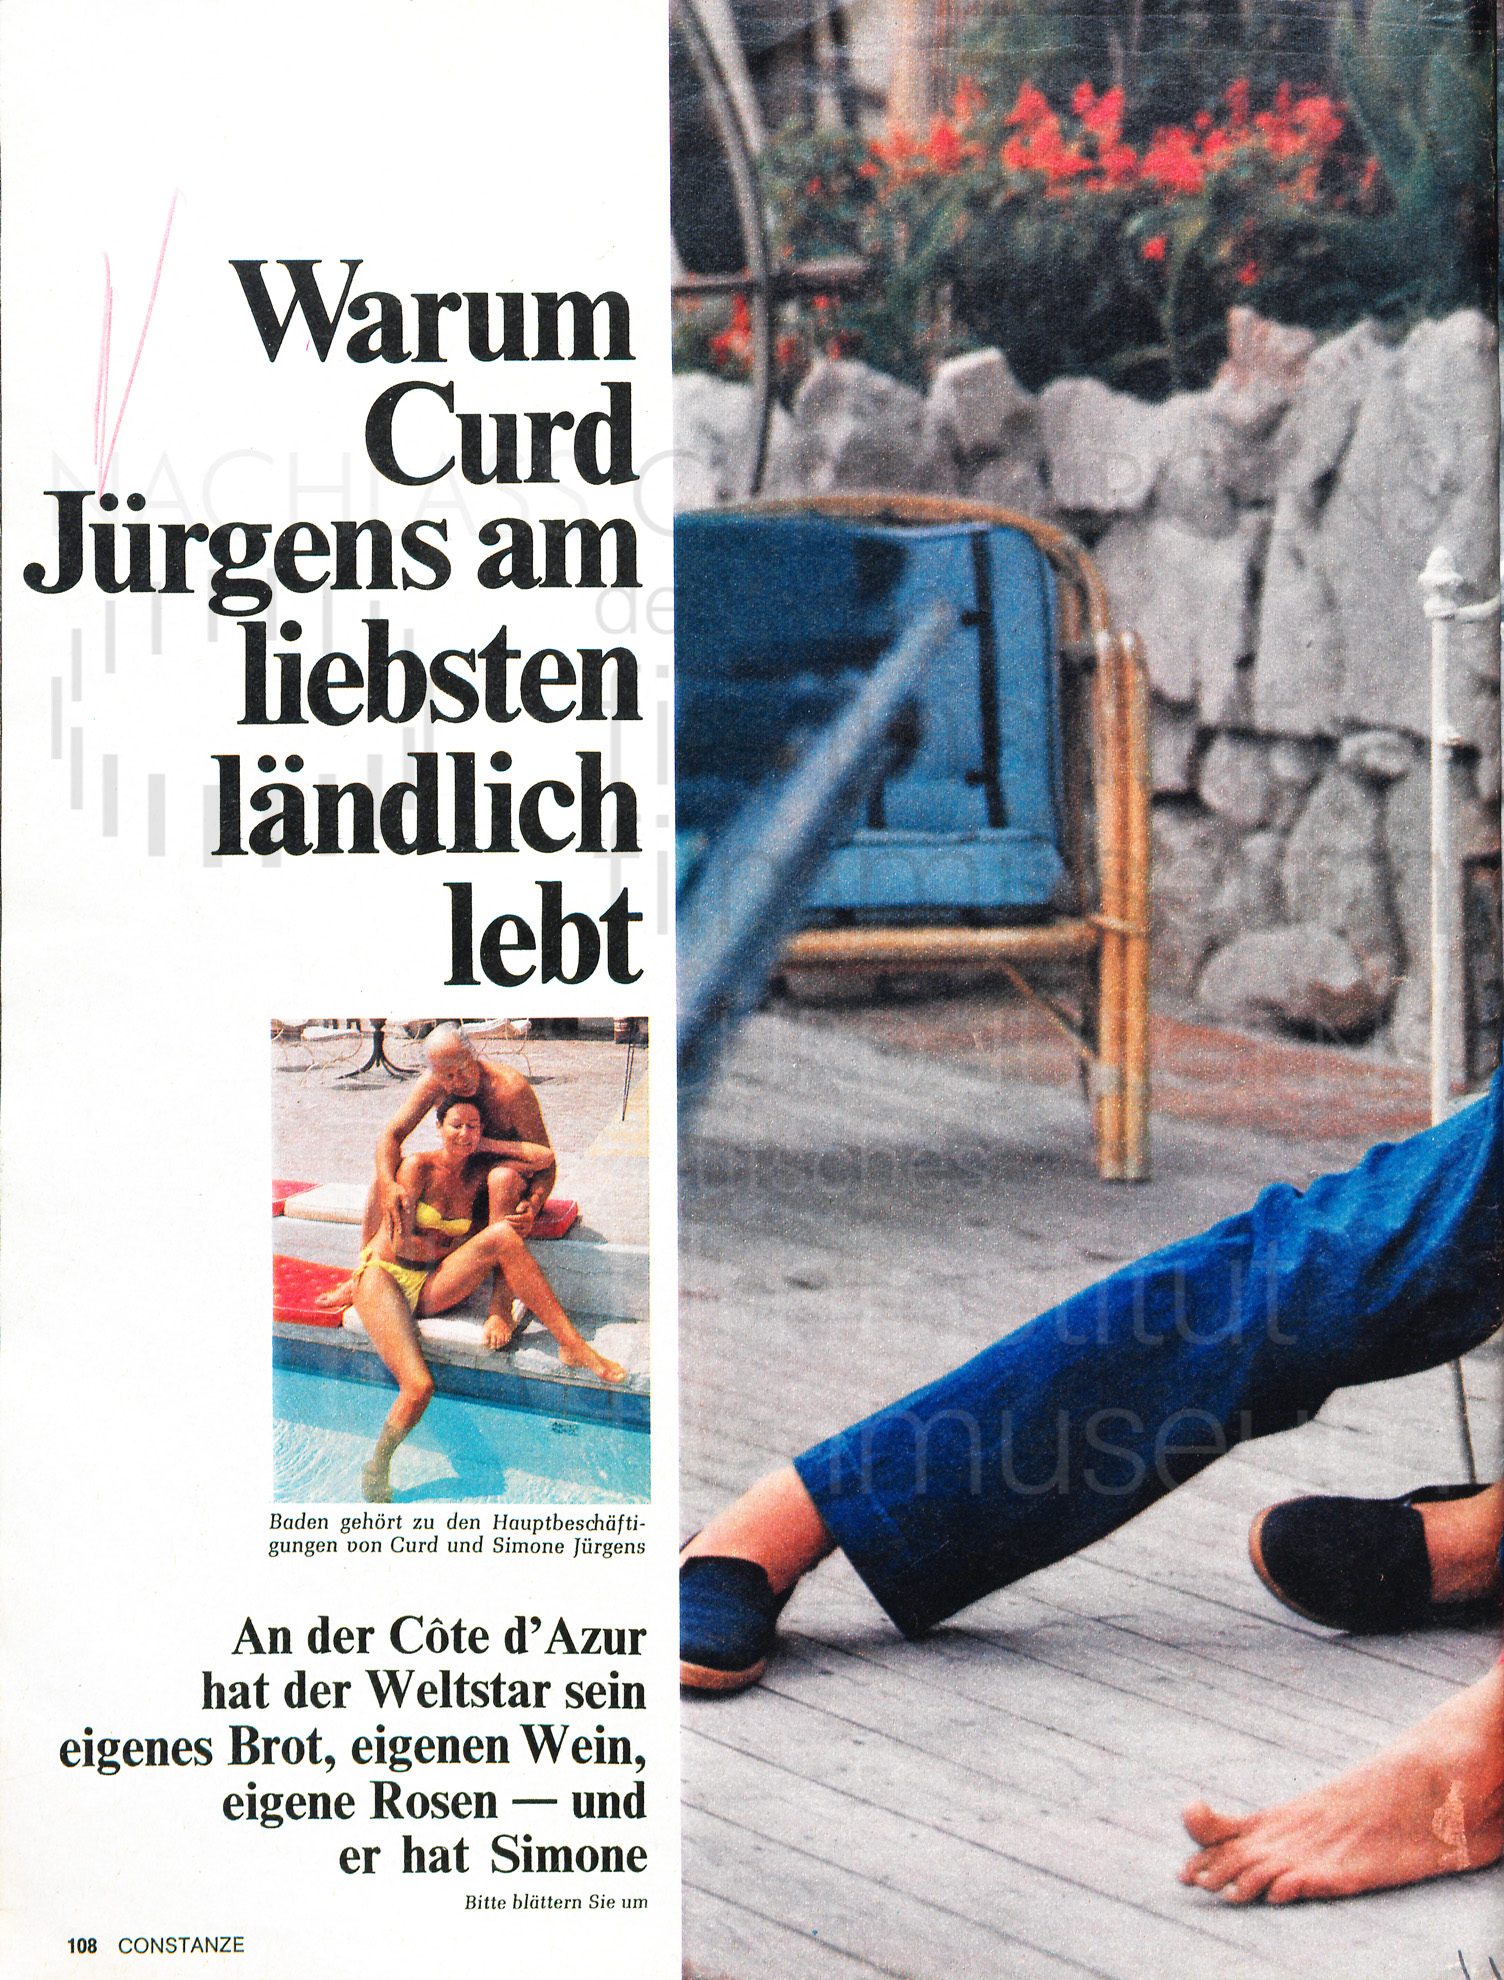 Constanze: "Warum Curd Jürgens am liebsten ländlich lebt", 1969